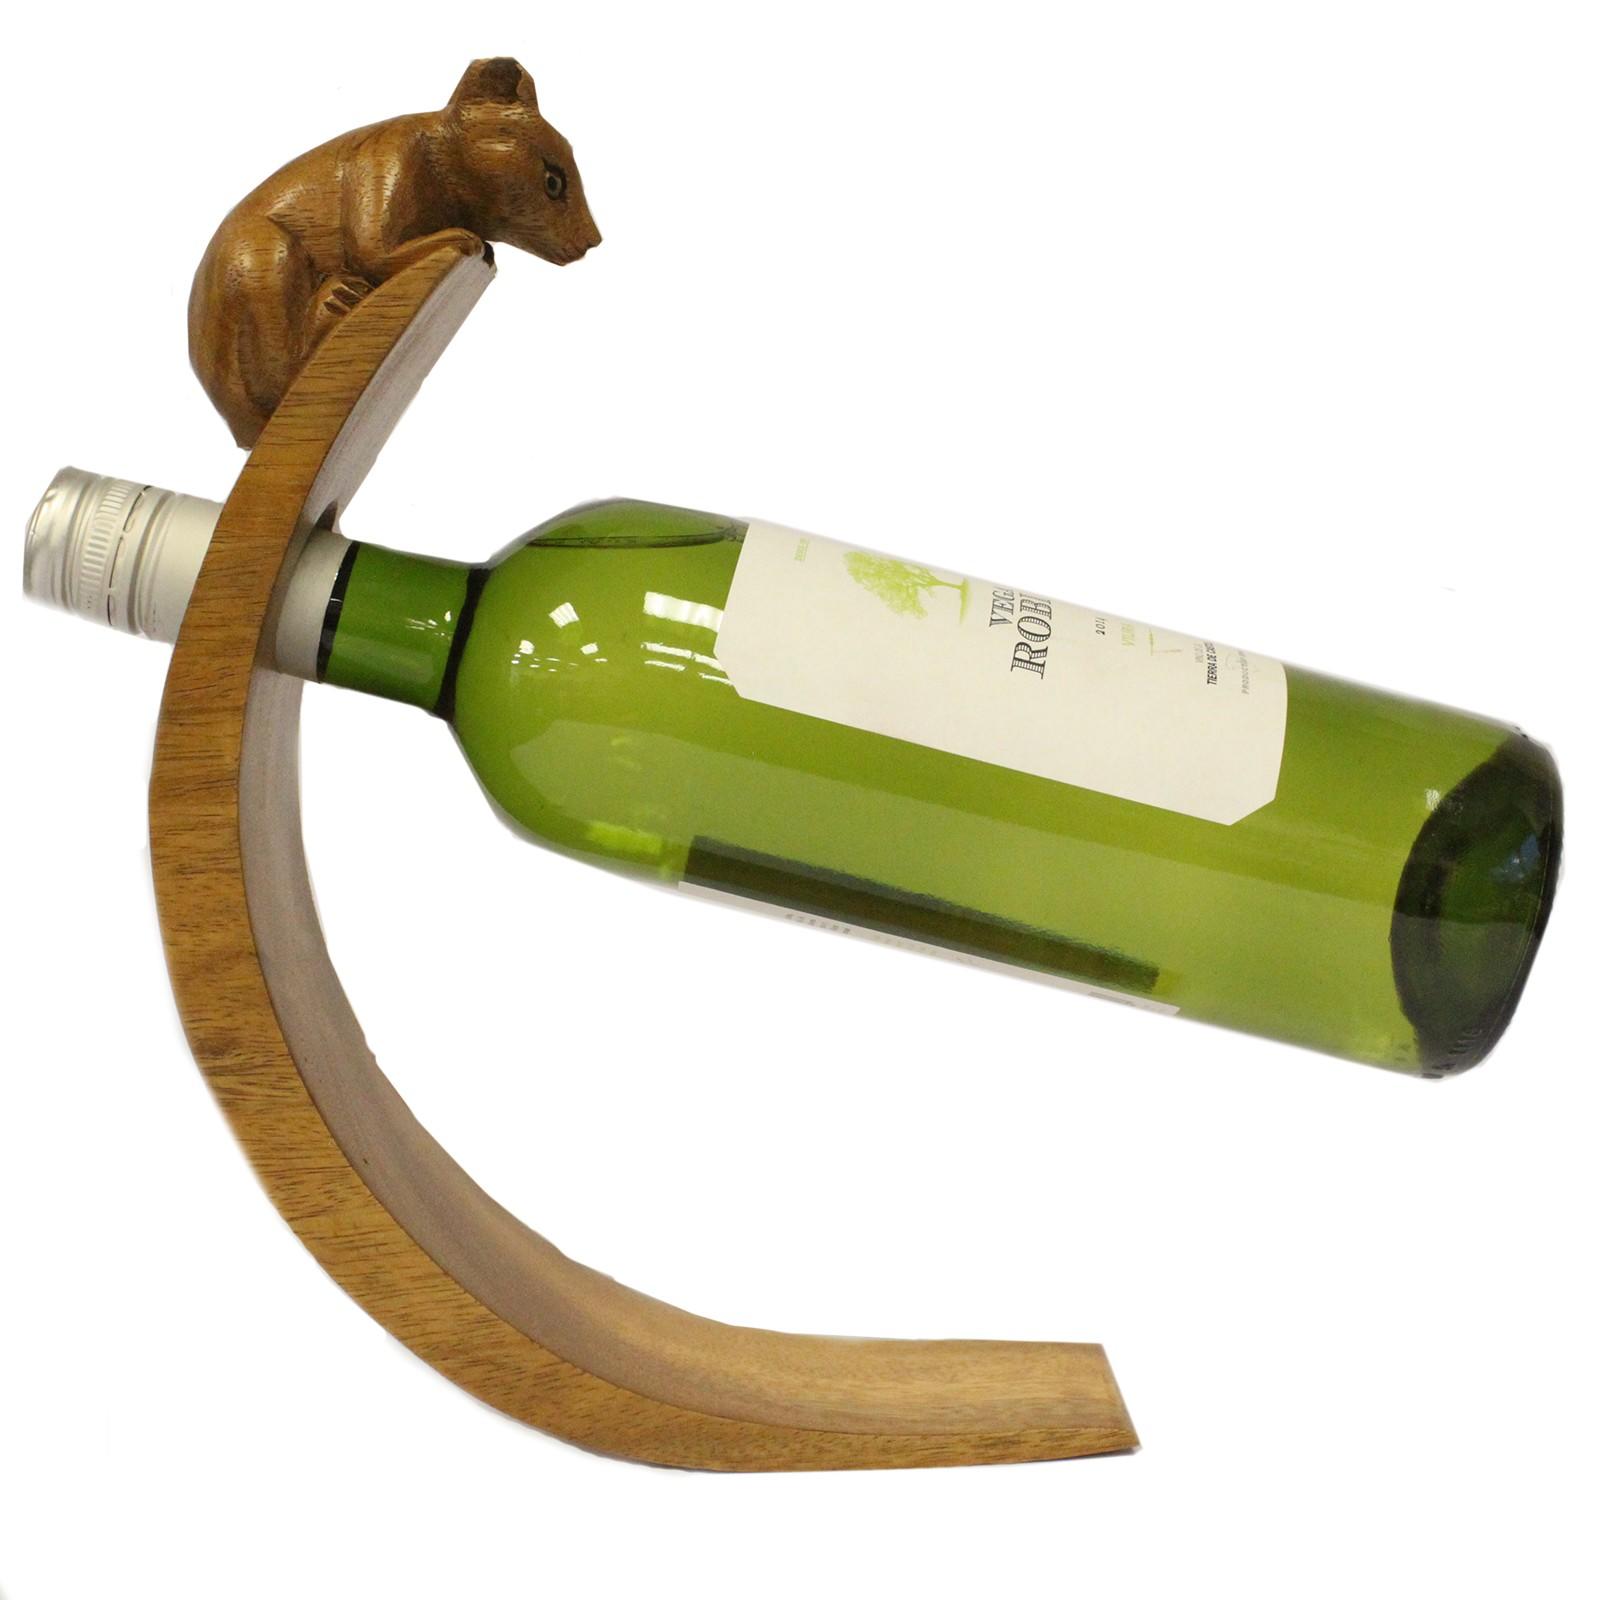 Balance wine bottle holder mouse